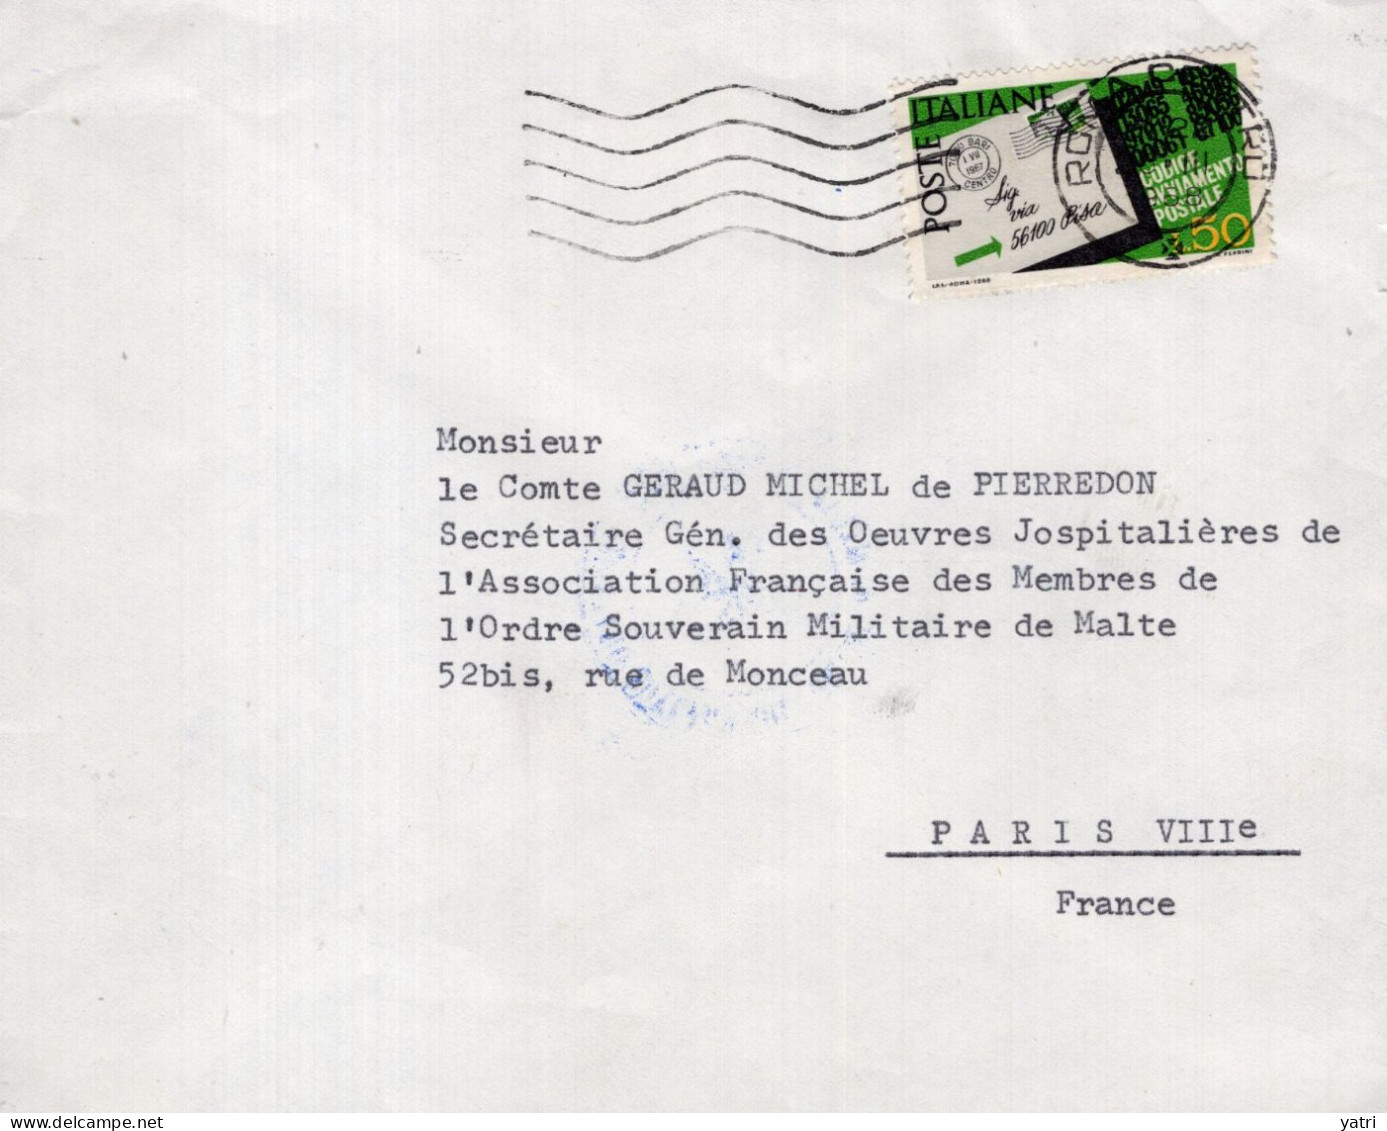 Italia (1968) - 50 Lire "Codice Avviamento Postale" Su Busta Per La Francia In Tariffa Ridotta - 1961-70: Storia Postale